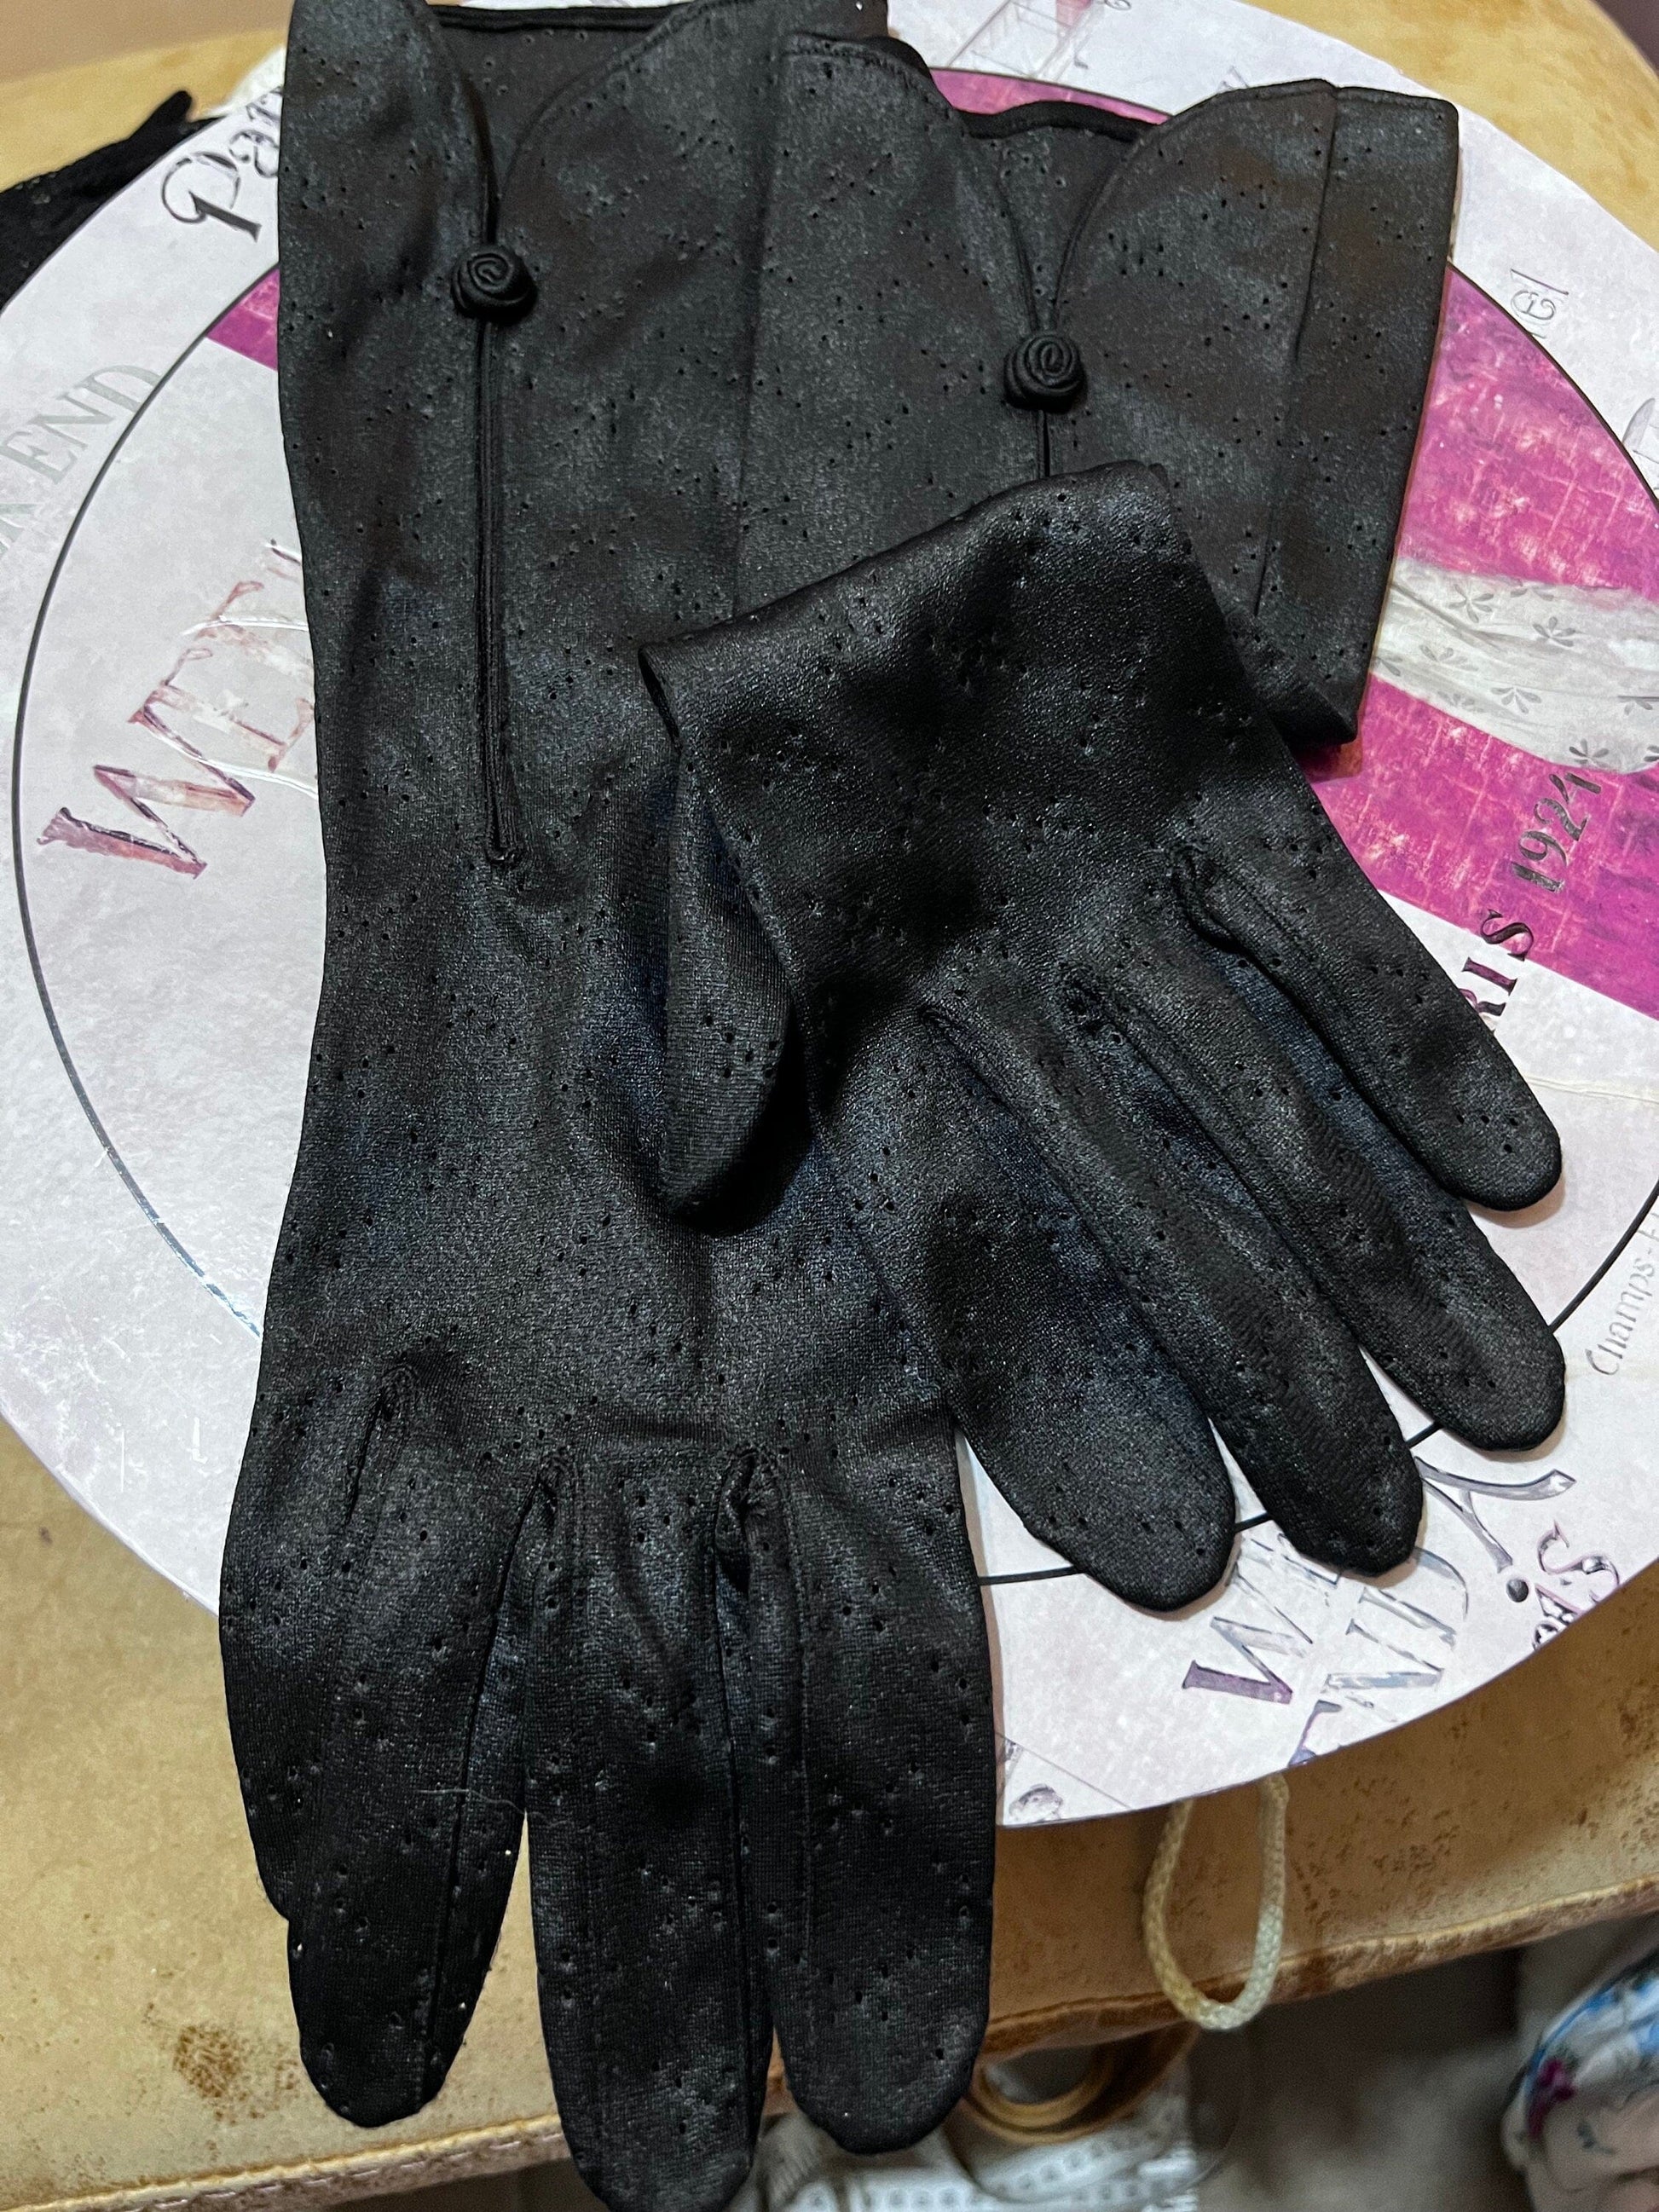 Vintage Ladies Black Stretch lace Gloves - lace  Style Black Gloves -  Size Small Gloves, Ladies Gloves, Black Gloves, lace gloves